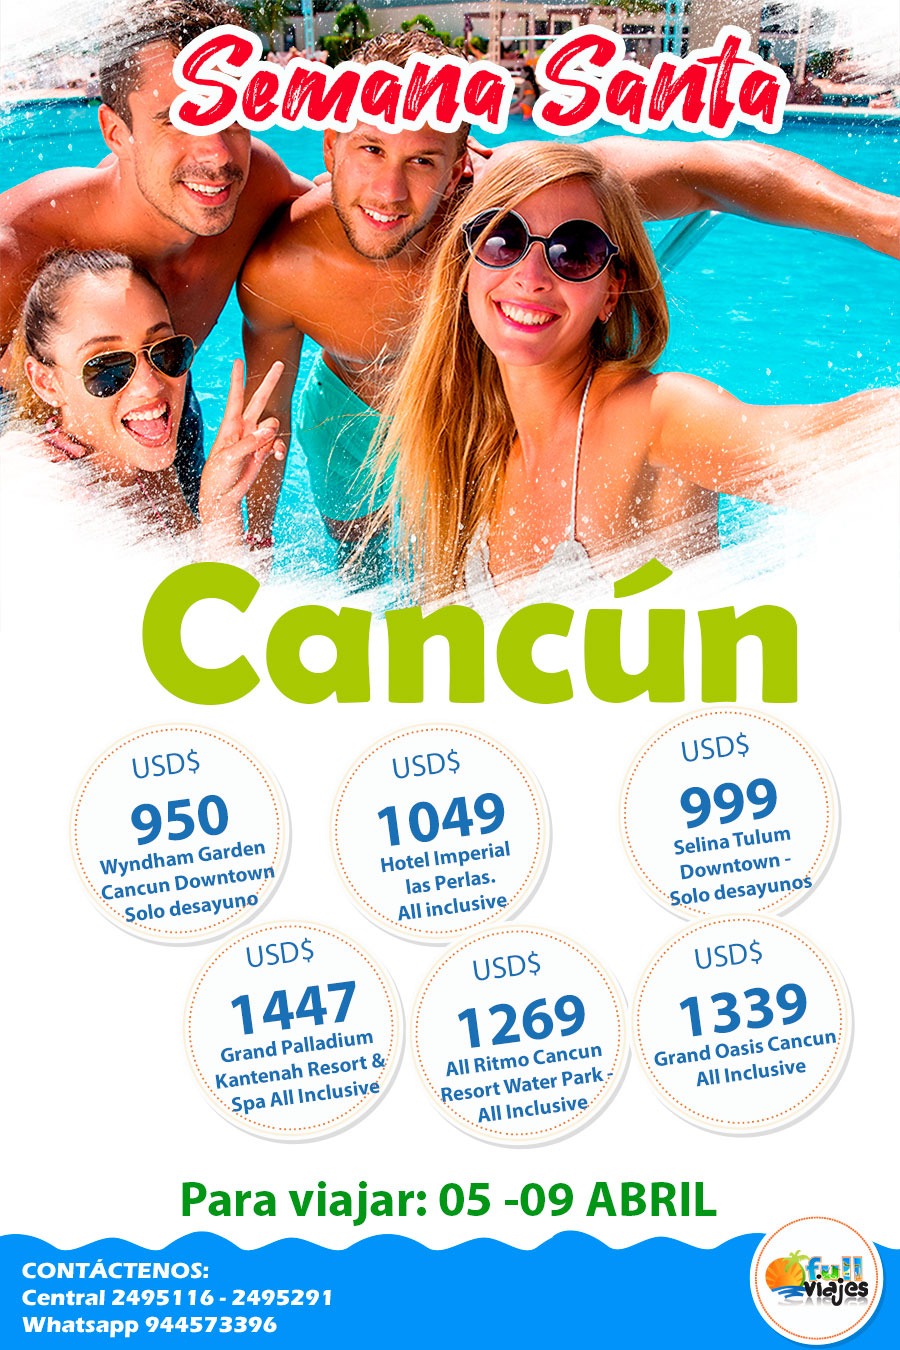 Cancun Semana Santa